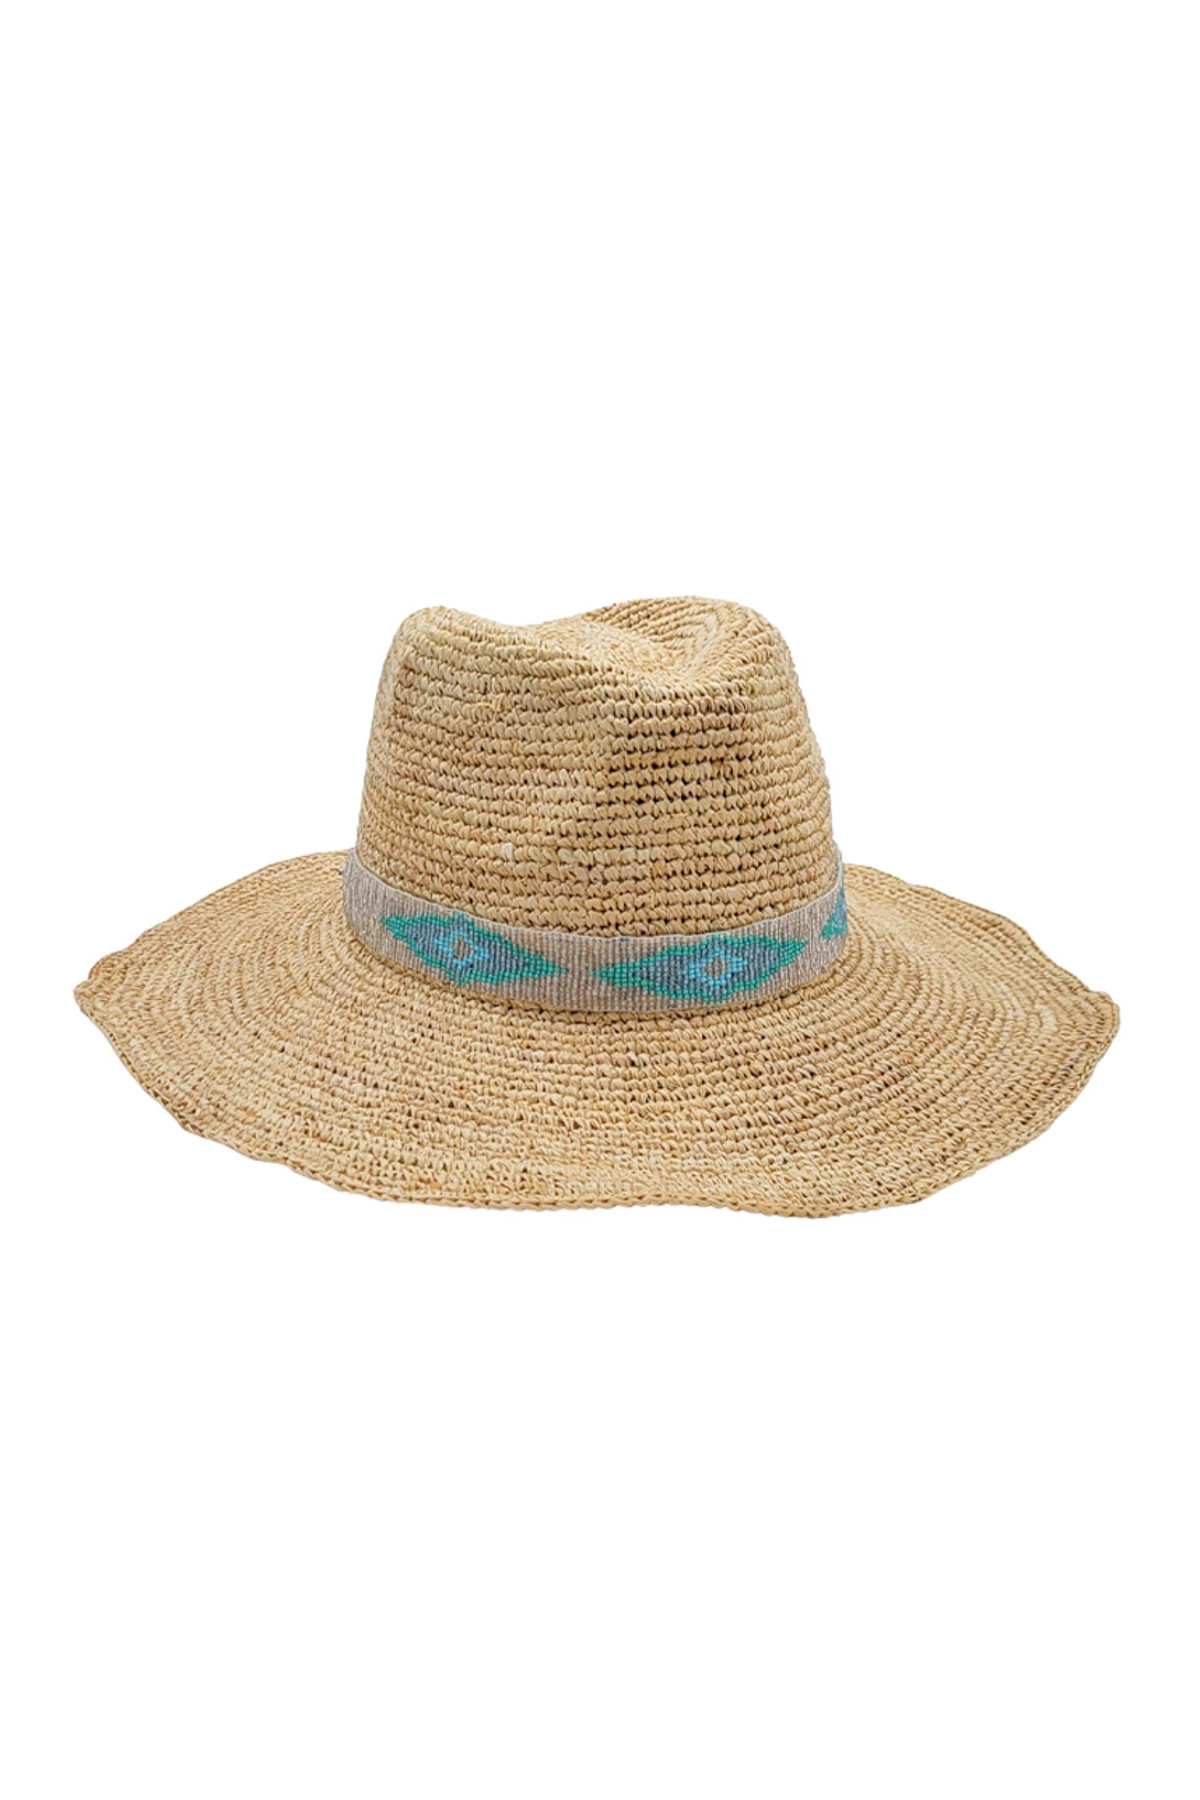 NATURAL Blue Jaye Cowboy Hat image number 2